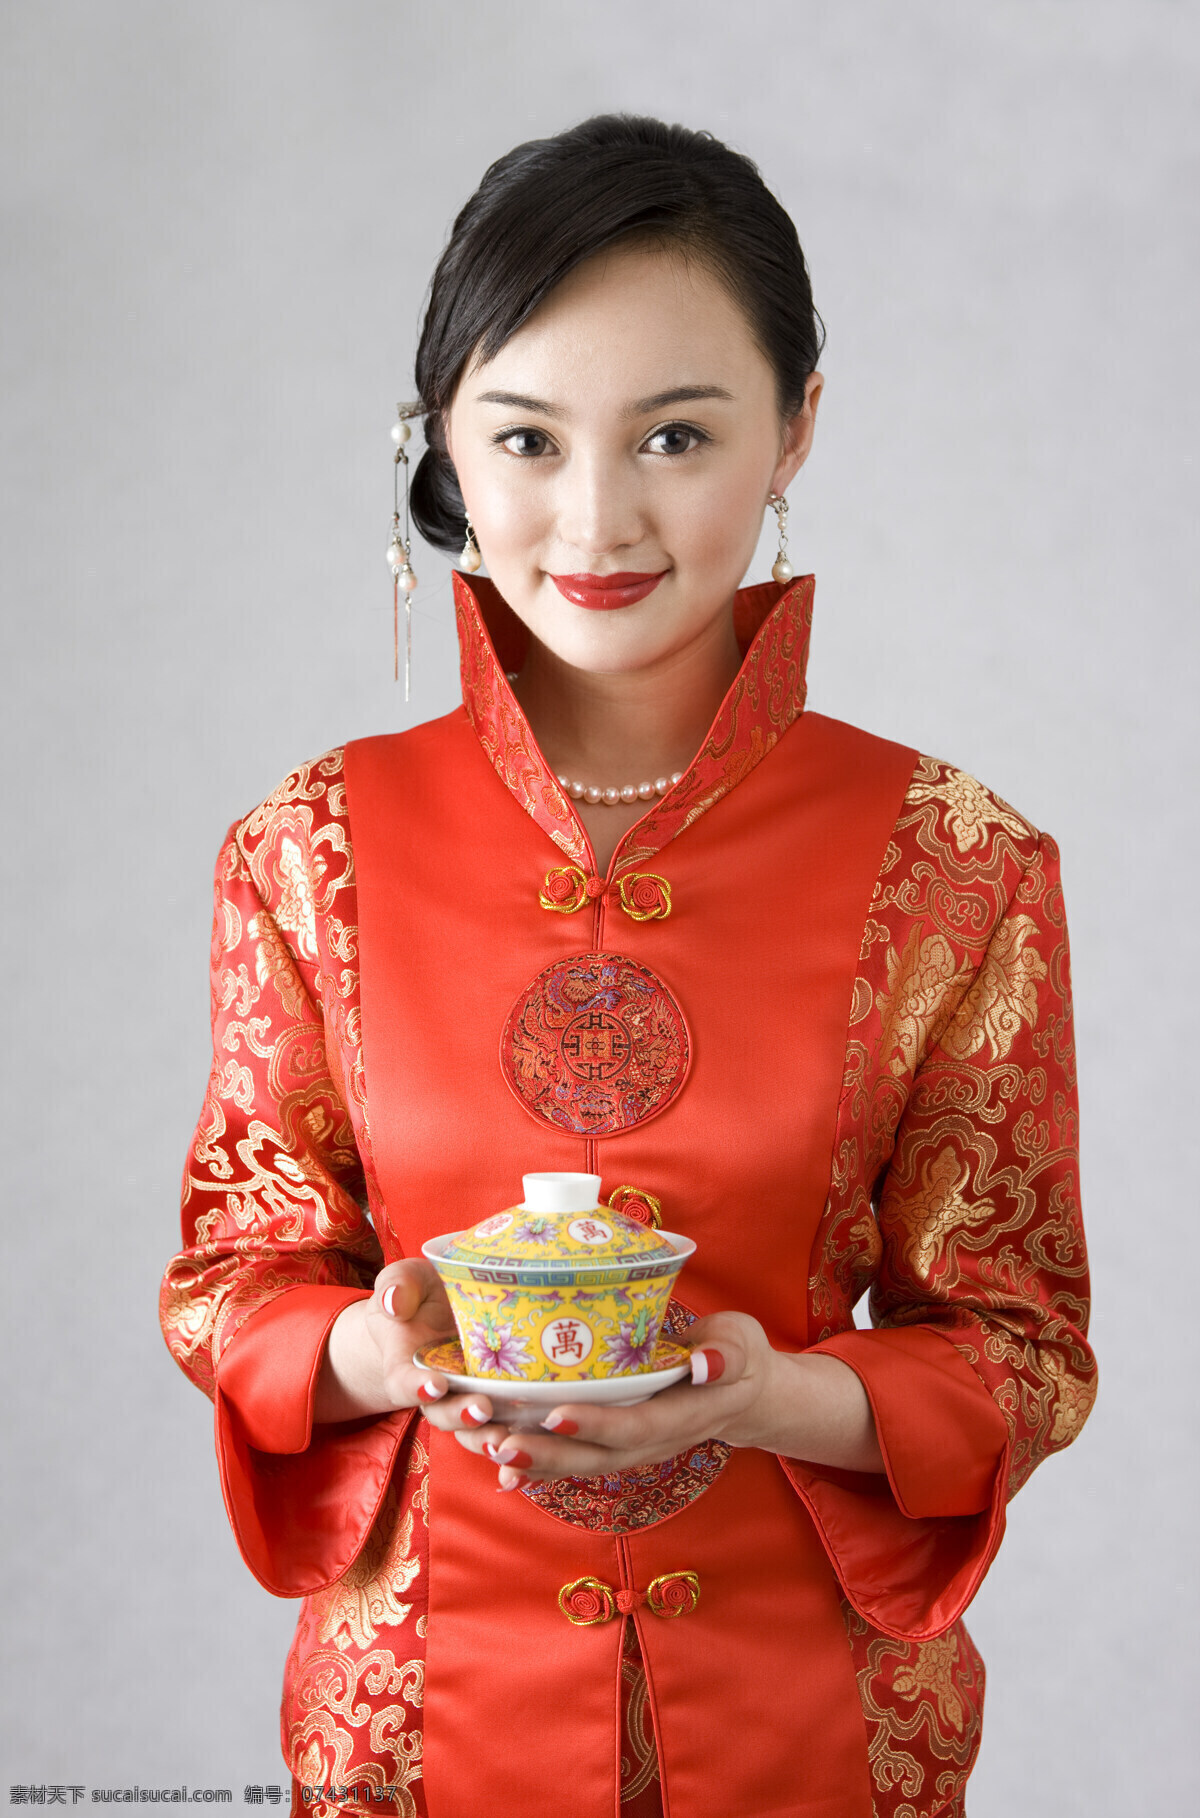 双手 托 茶杯 旗袍 女人 东方美人 托起茶杯 唐装 古典 中国风 茶文化 古典人物 人物图片 高清图片 女性 人物 美女图片